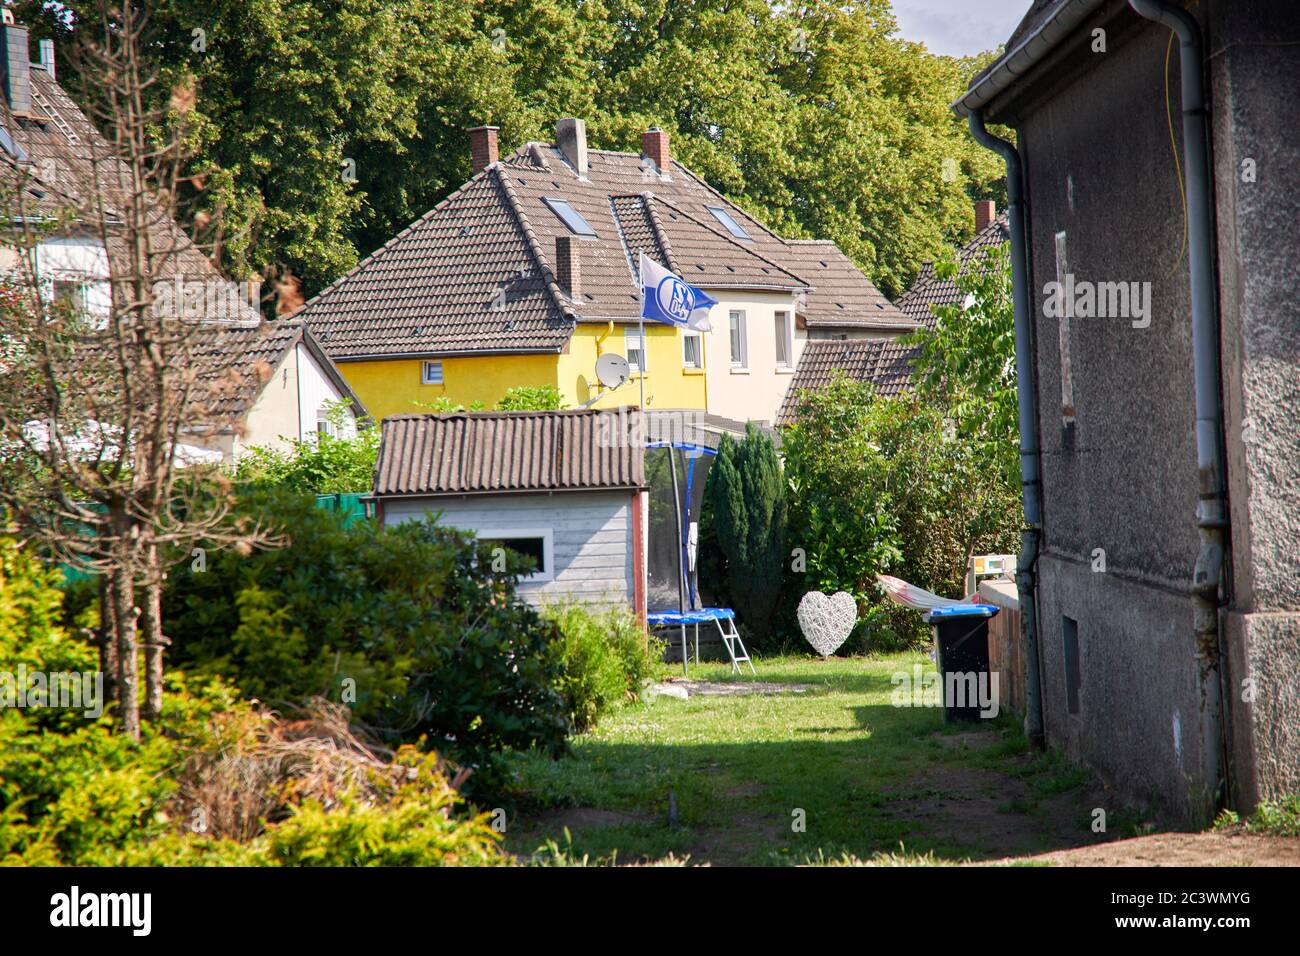 Bergarbeitersiedlung in Gelsenkirchen Hassel. In einam Garten hinter einem Bergarbeiter Haus weht die Flagge von dem Fussballverein Schalke 04. Stock Photo